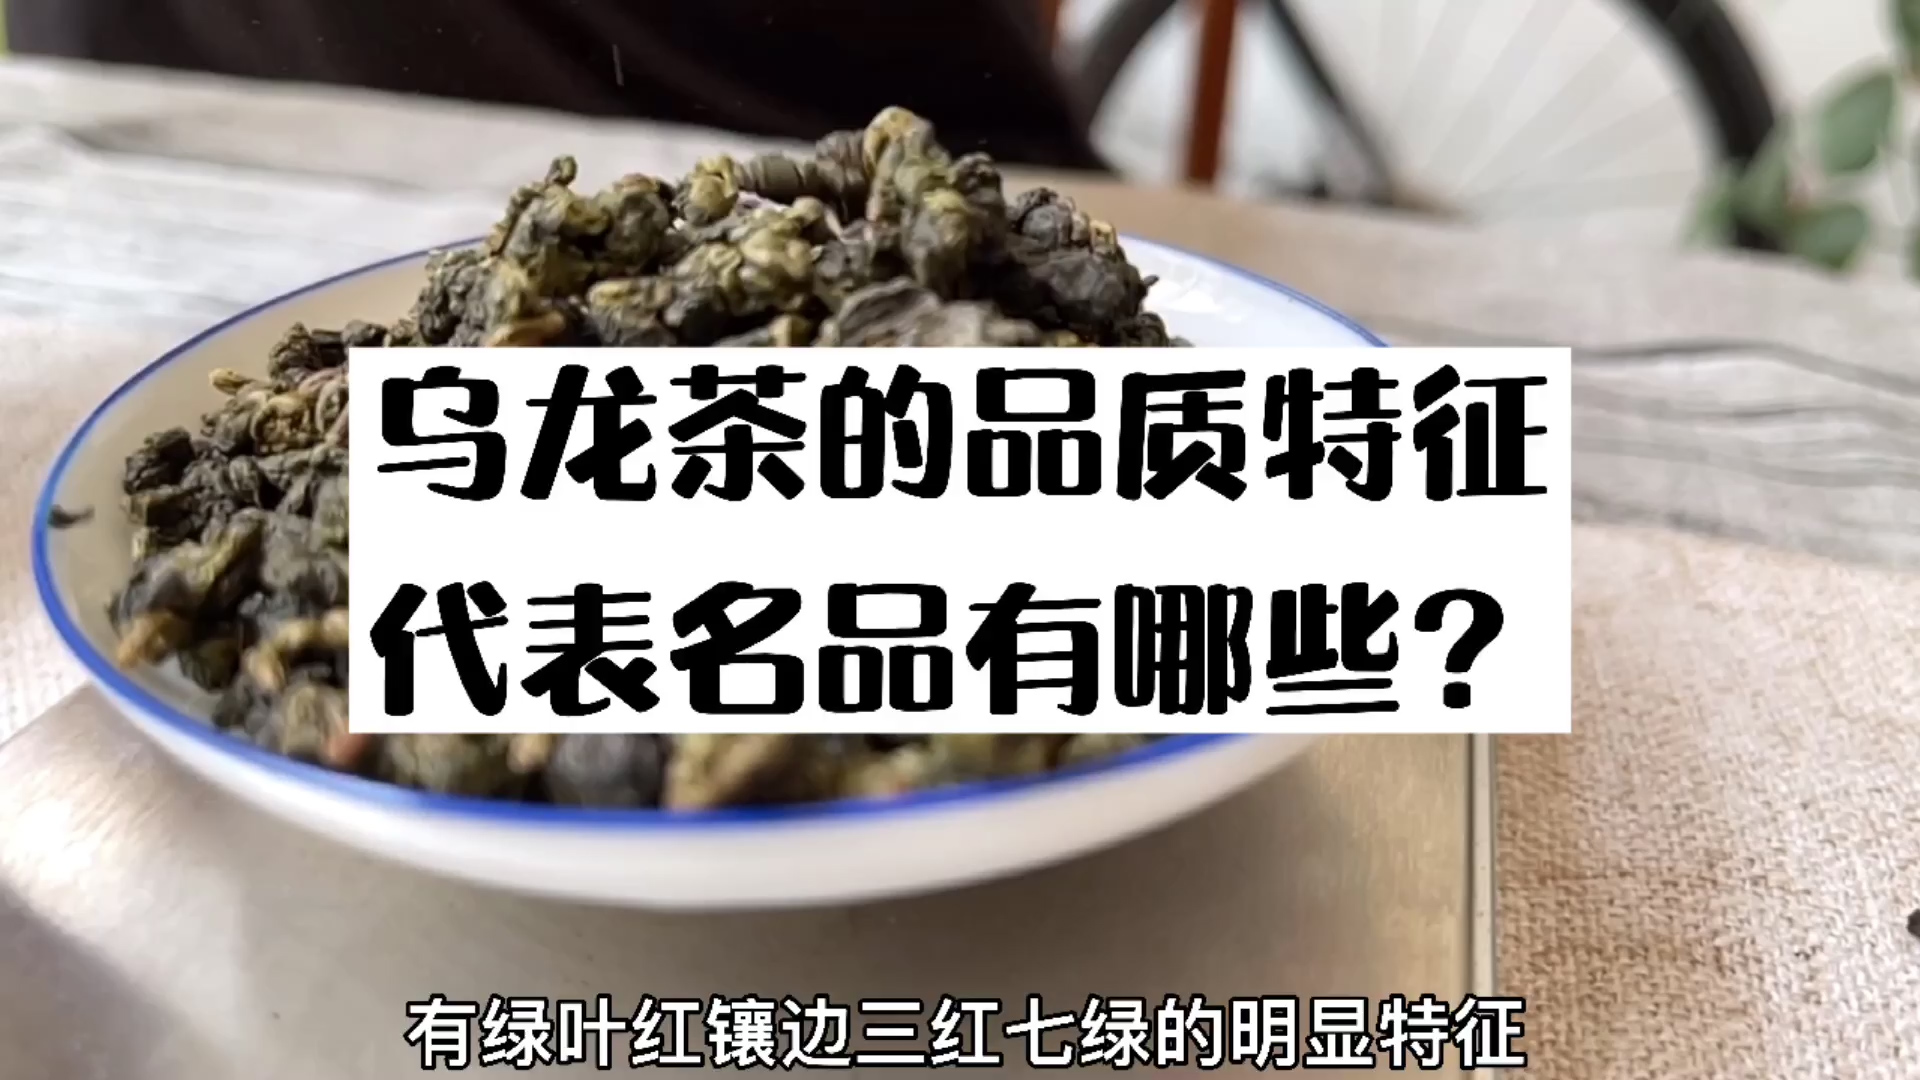 茶叶问答第二十一期：什么是乌龙茶?有什么特点?代表品名有哪些?